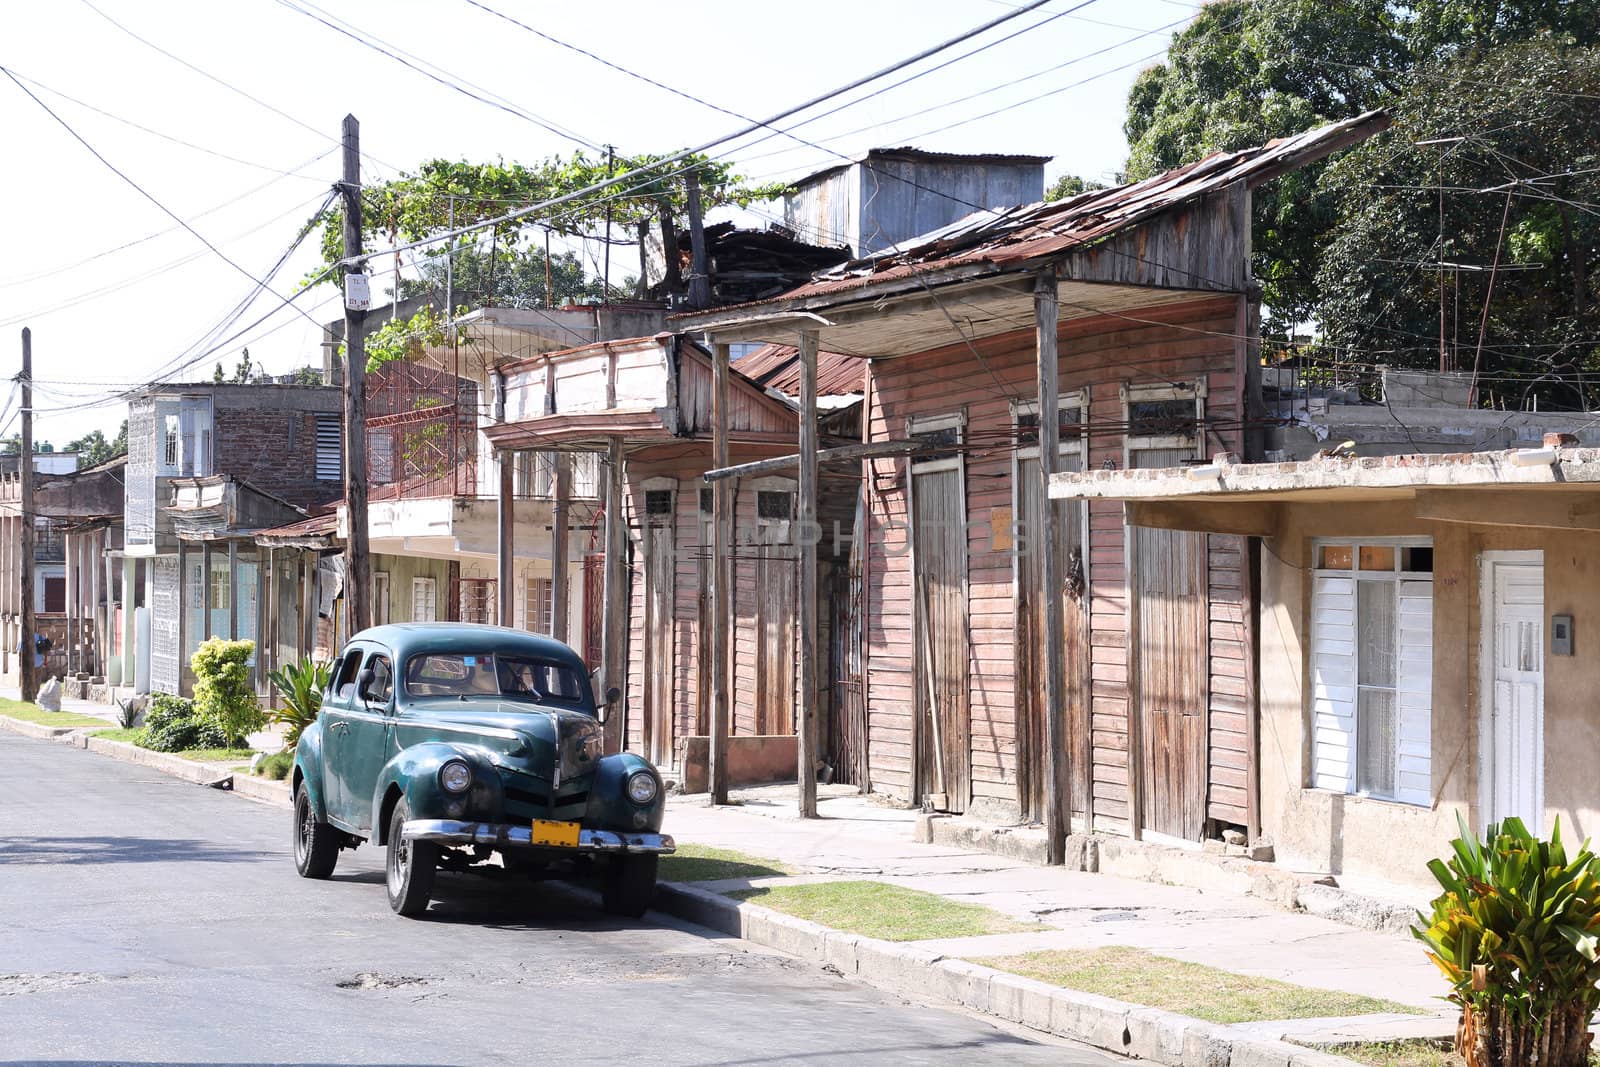 Santiago de Cuba by tupungato